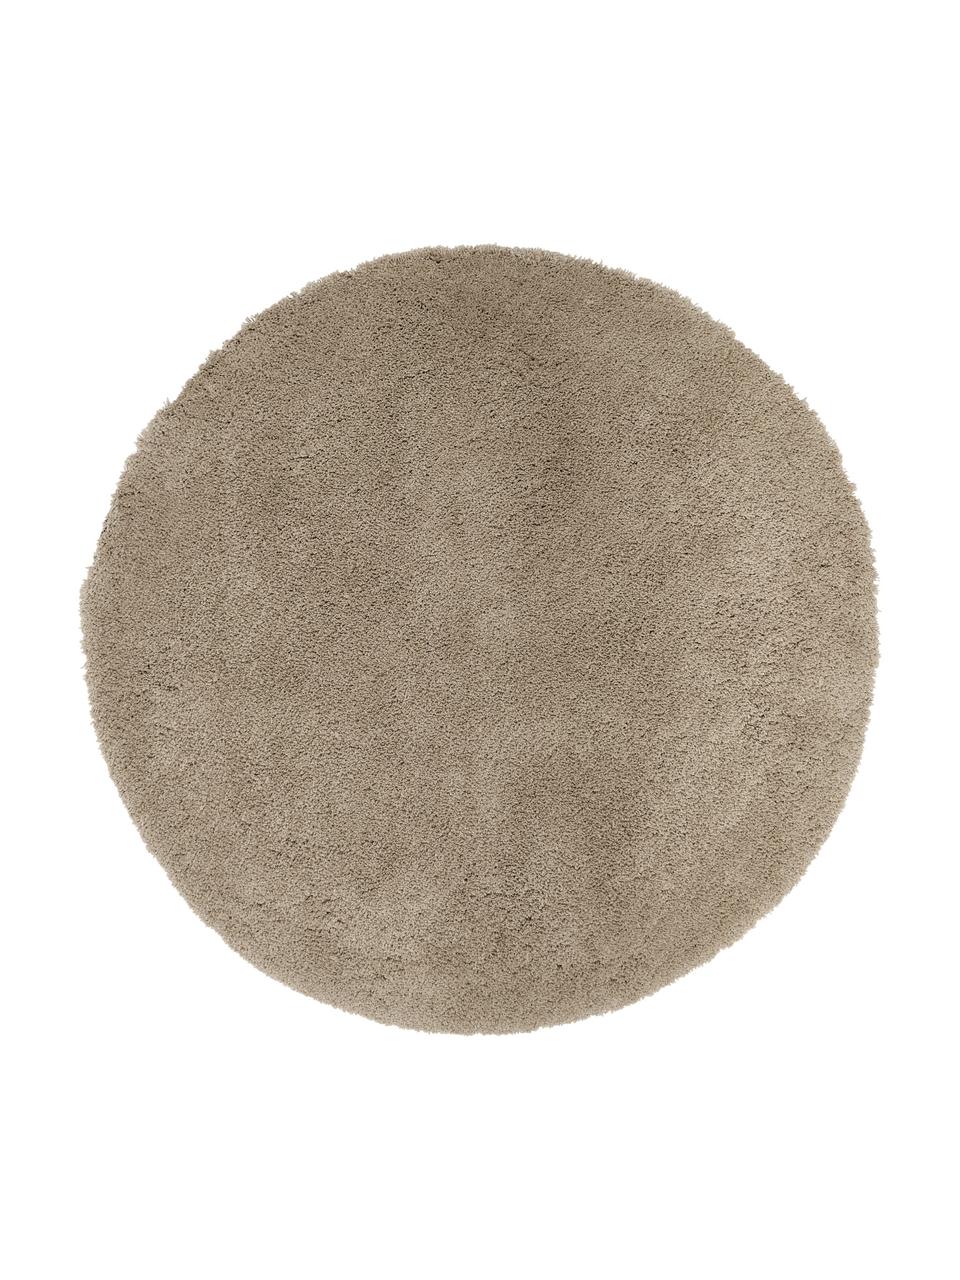 Pluizig rond hoogpolig vloerkleed Leighton in beige, Onderzijde: 70% polyester, 30% katoen, Beige-bruin, Ø 150 cm (maat M)